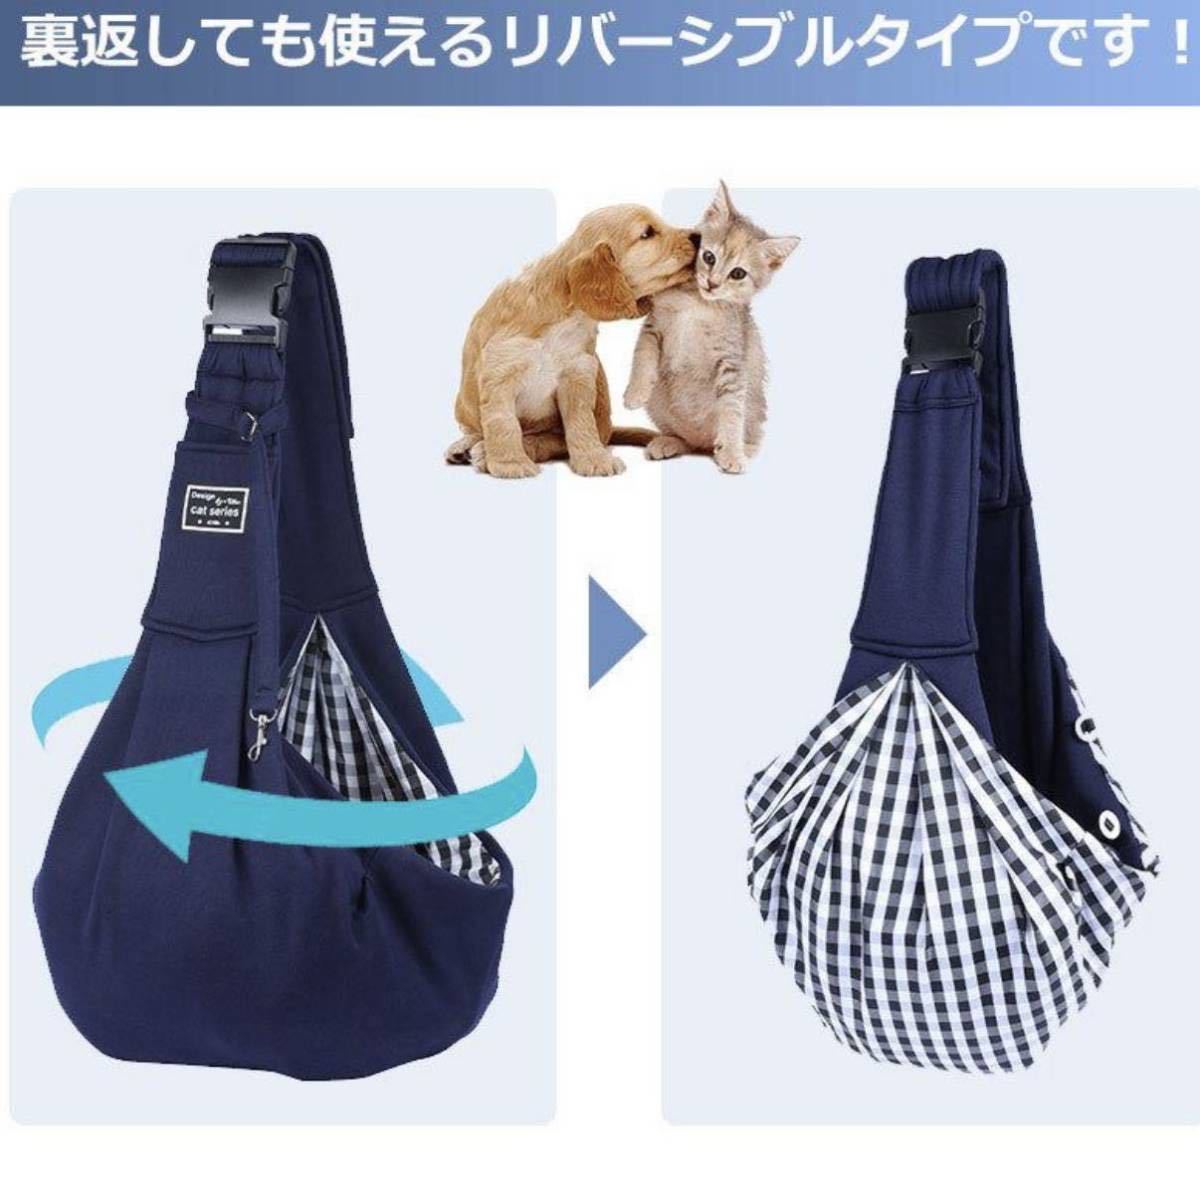  navy buckle attaching pet sling carry bag dog cat ... string shoulder bag 